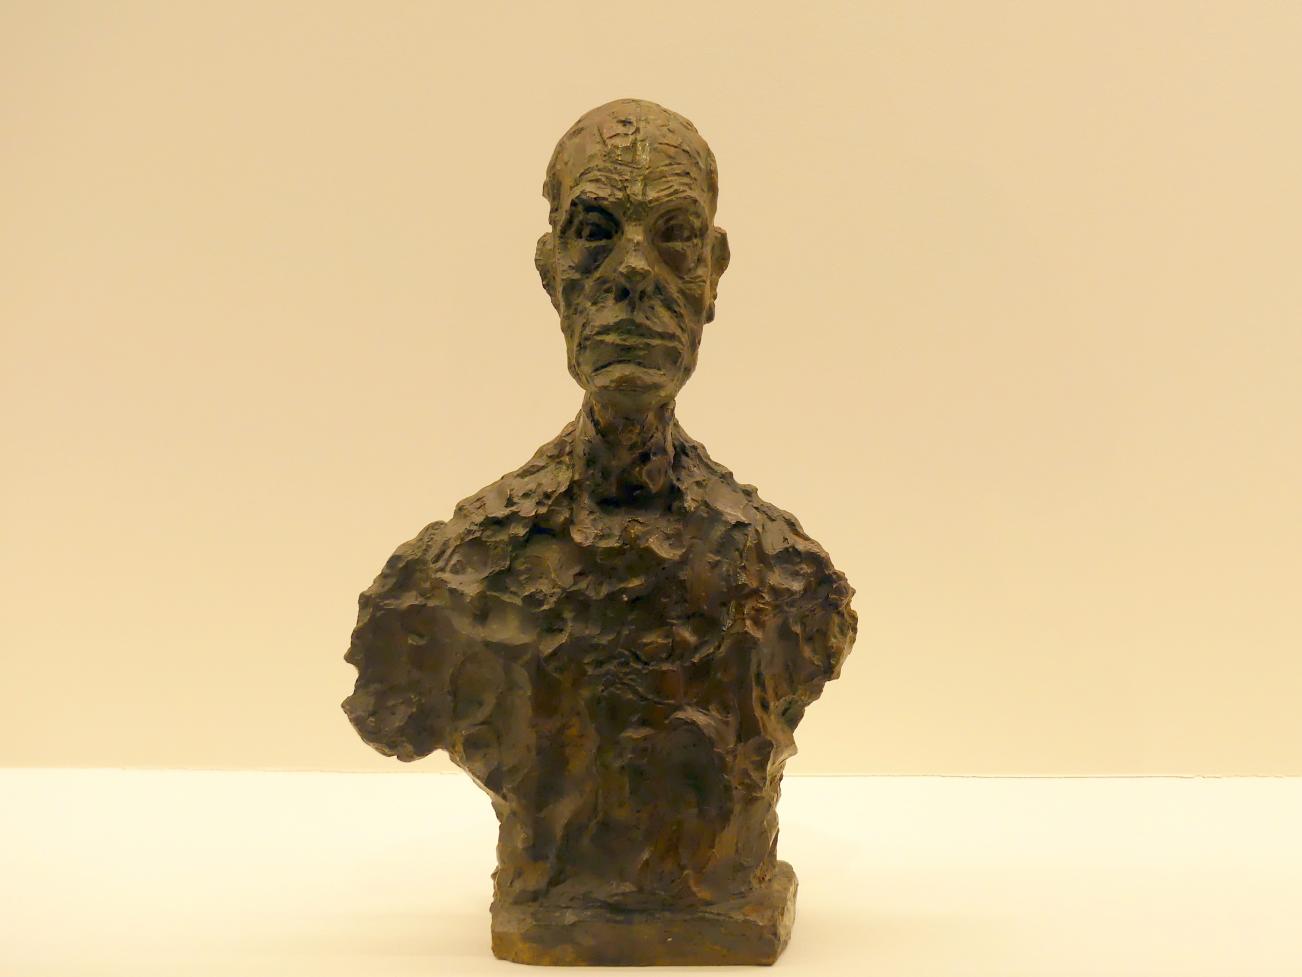 Alberto Giacometti (1914–1965), Büste von Diego, Prag, Nationalgalerie im Messepalast, Ausstellung "Alberto Giacometti" vom 18.07.-01.12.2019, Kleine Skulpturen, 1962, Bild 1/3